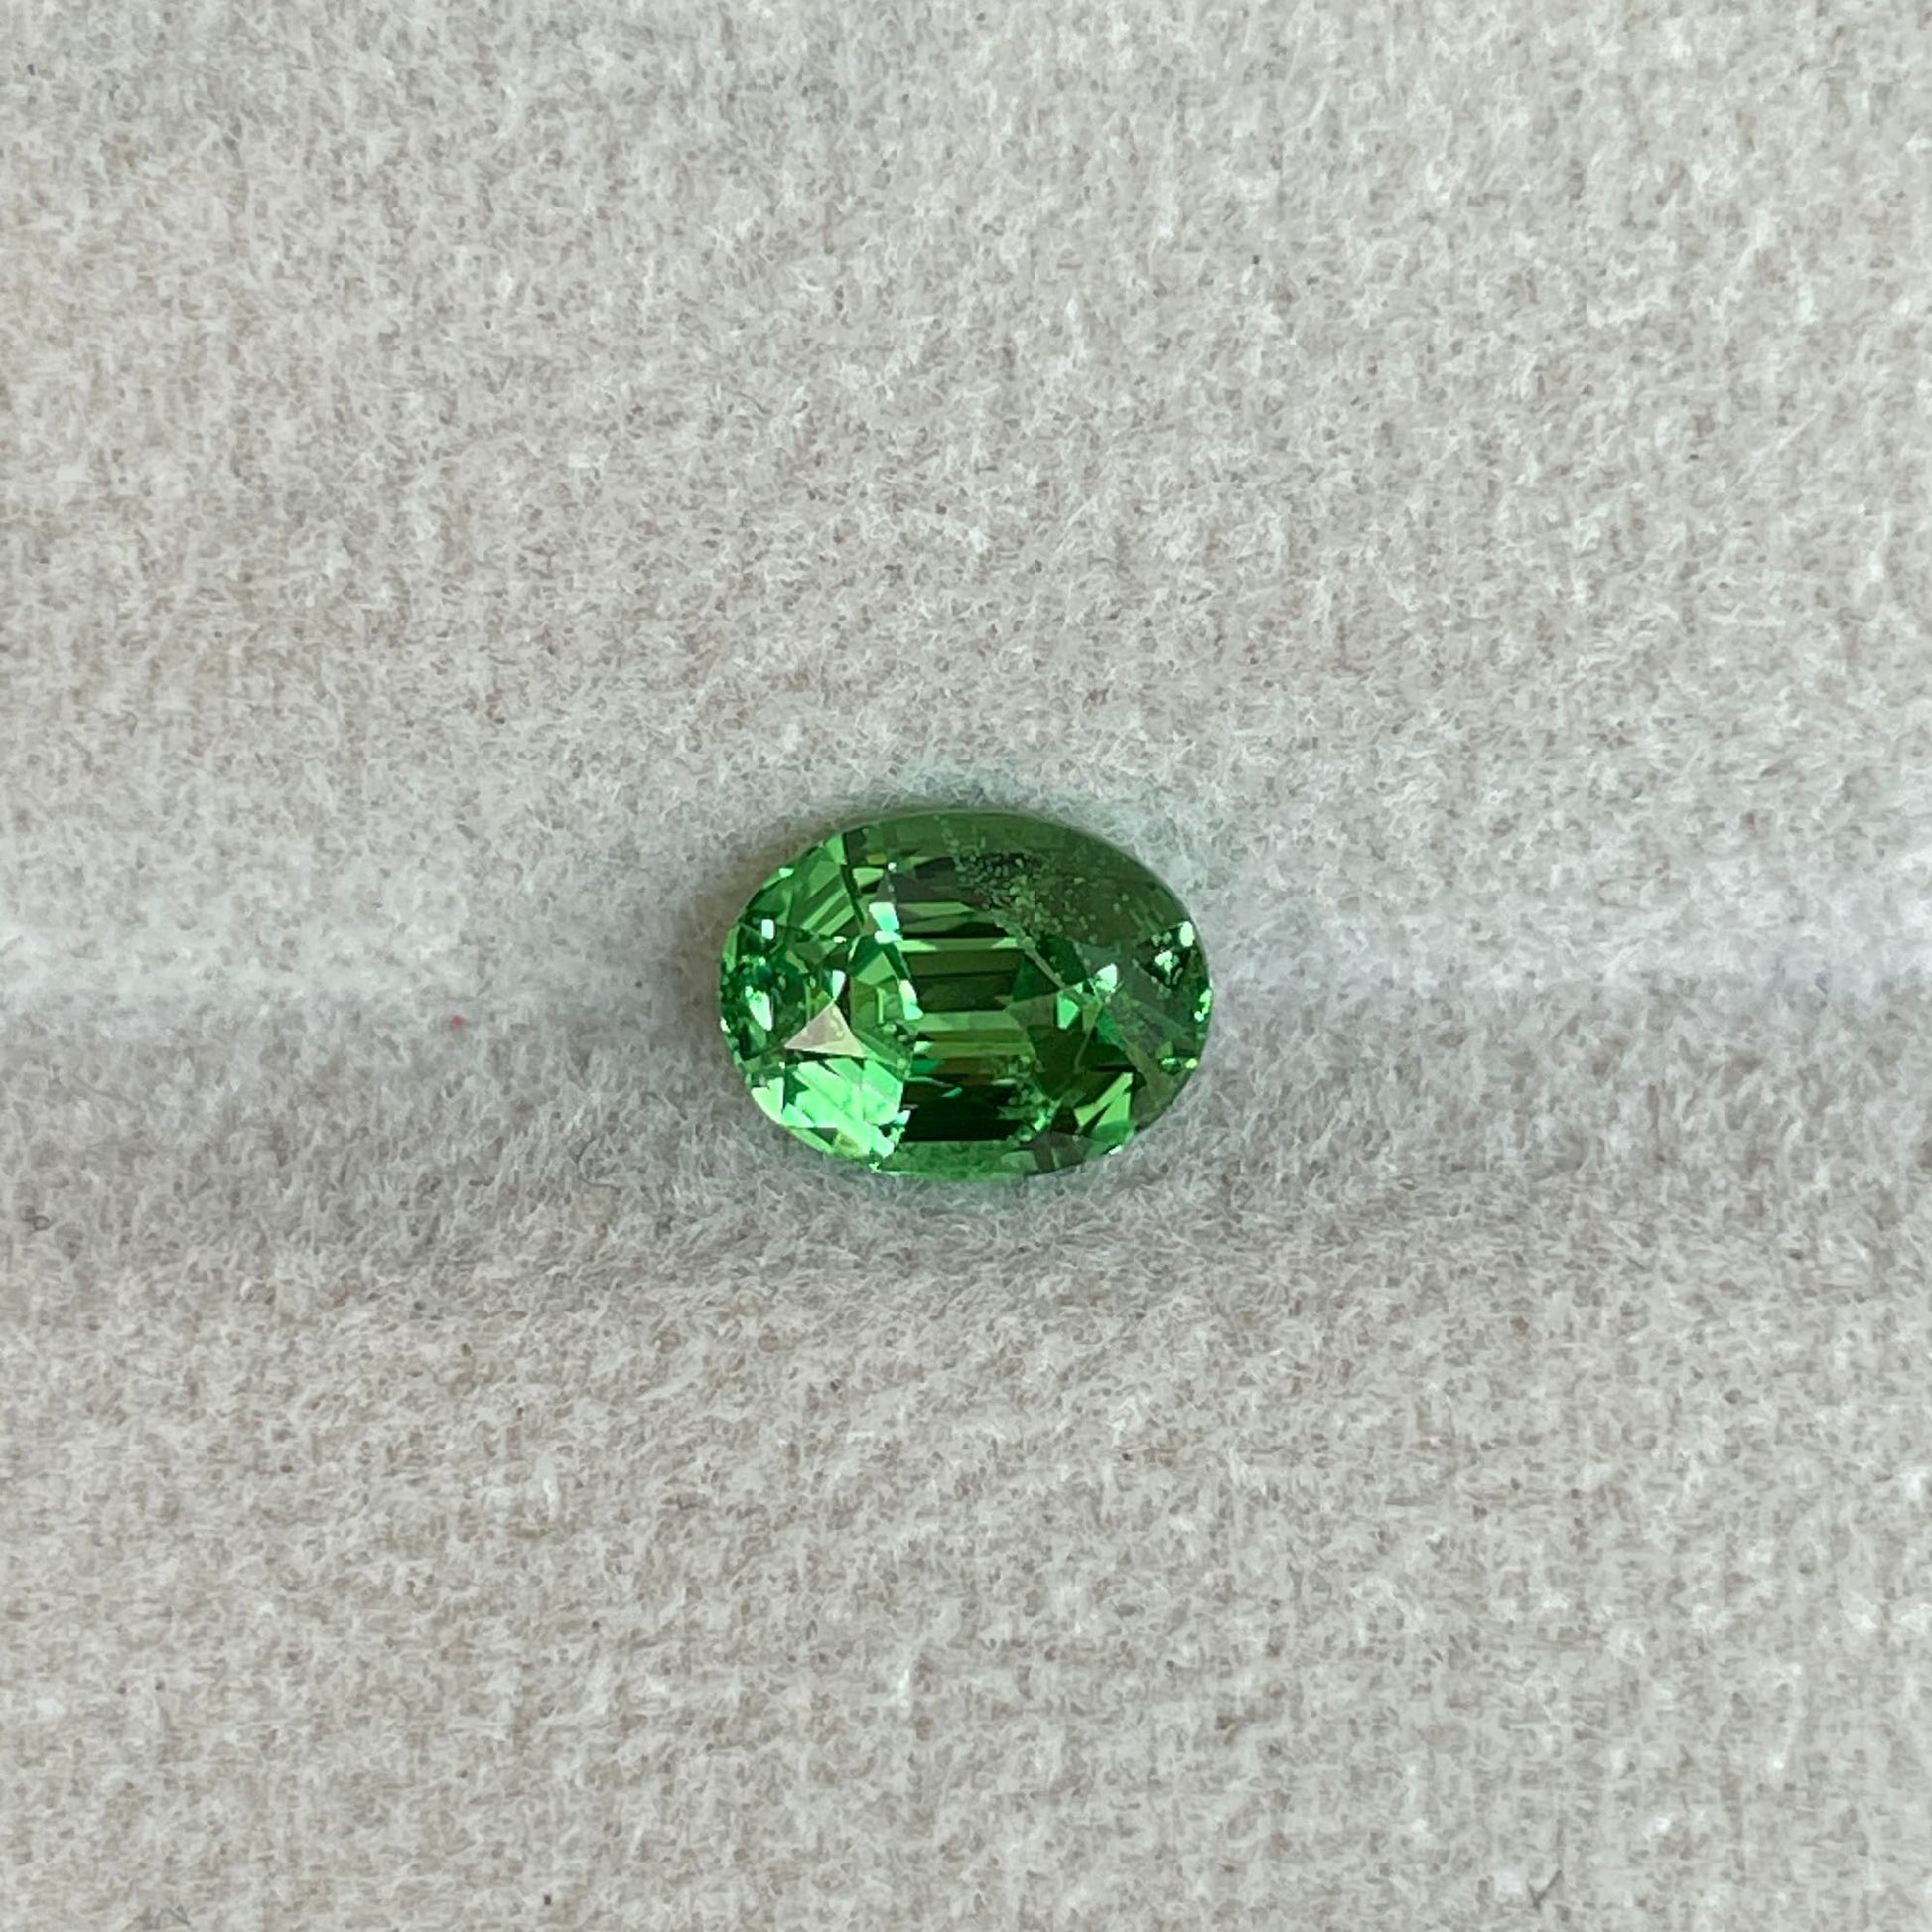 1.14 crt, faceted Natural Green Tsavorite Garnet from Tanzania, Emerald Alternative